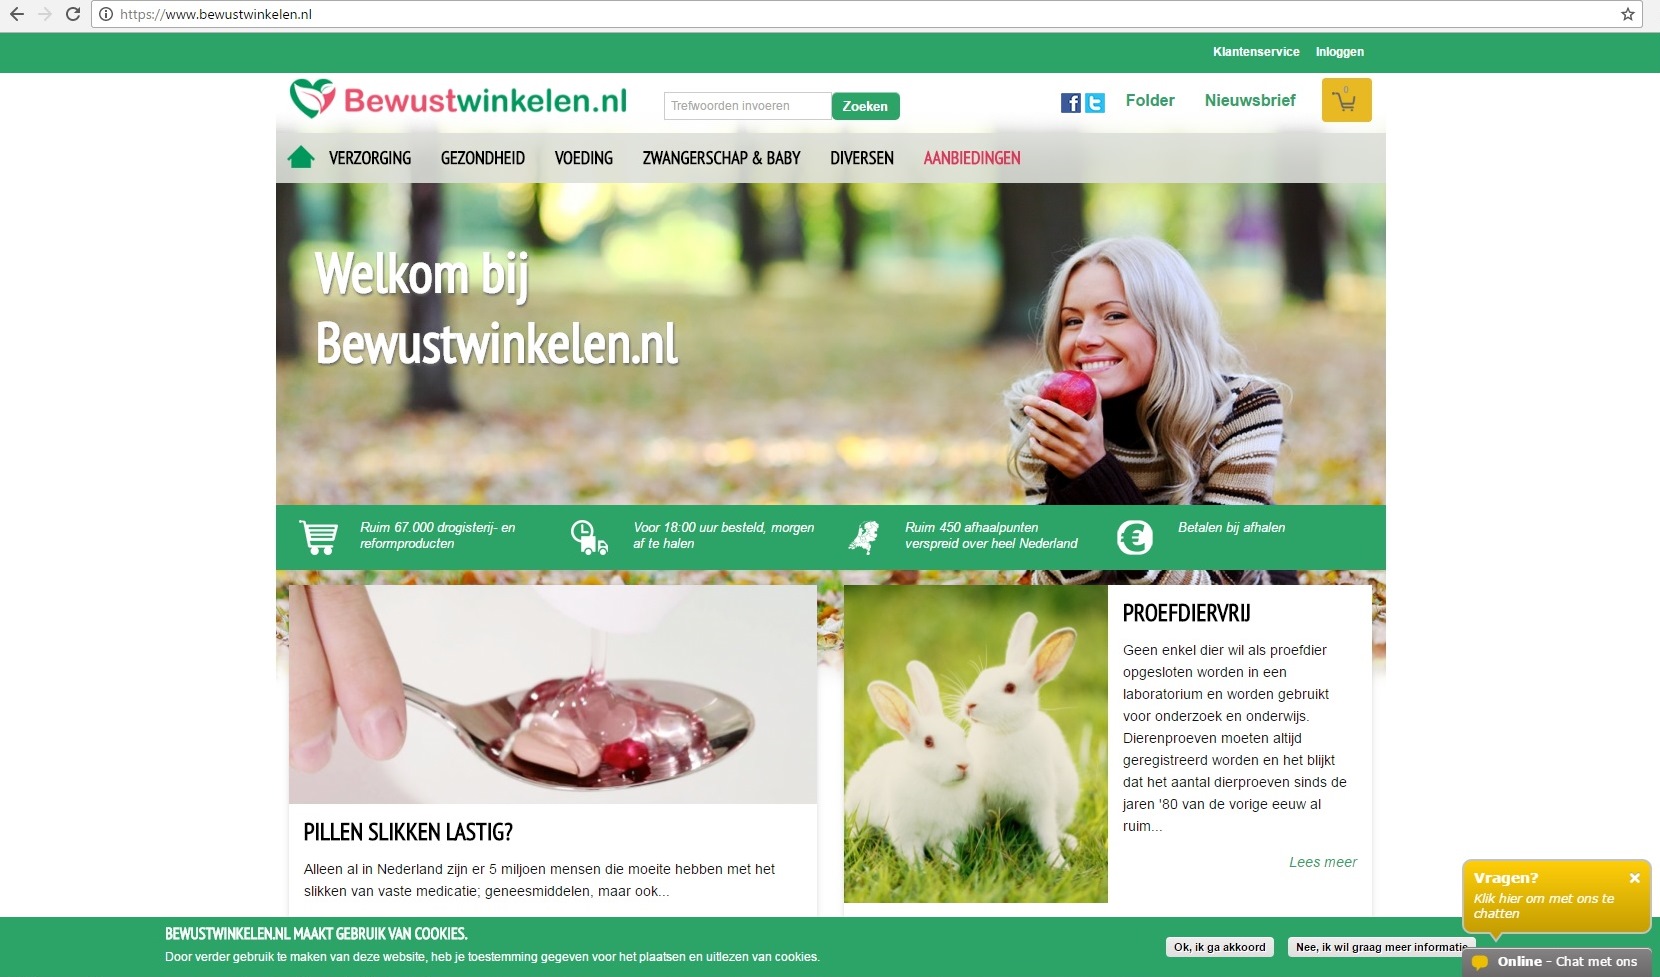 hp-nwe-website-bewustwinkelen-nl-nov-2016